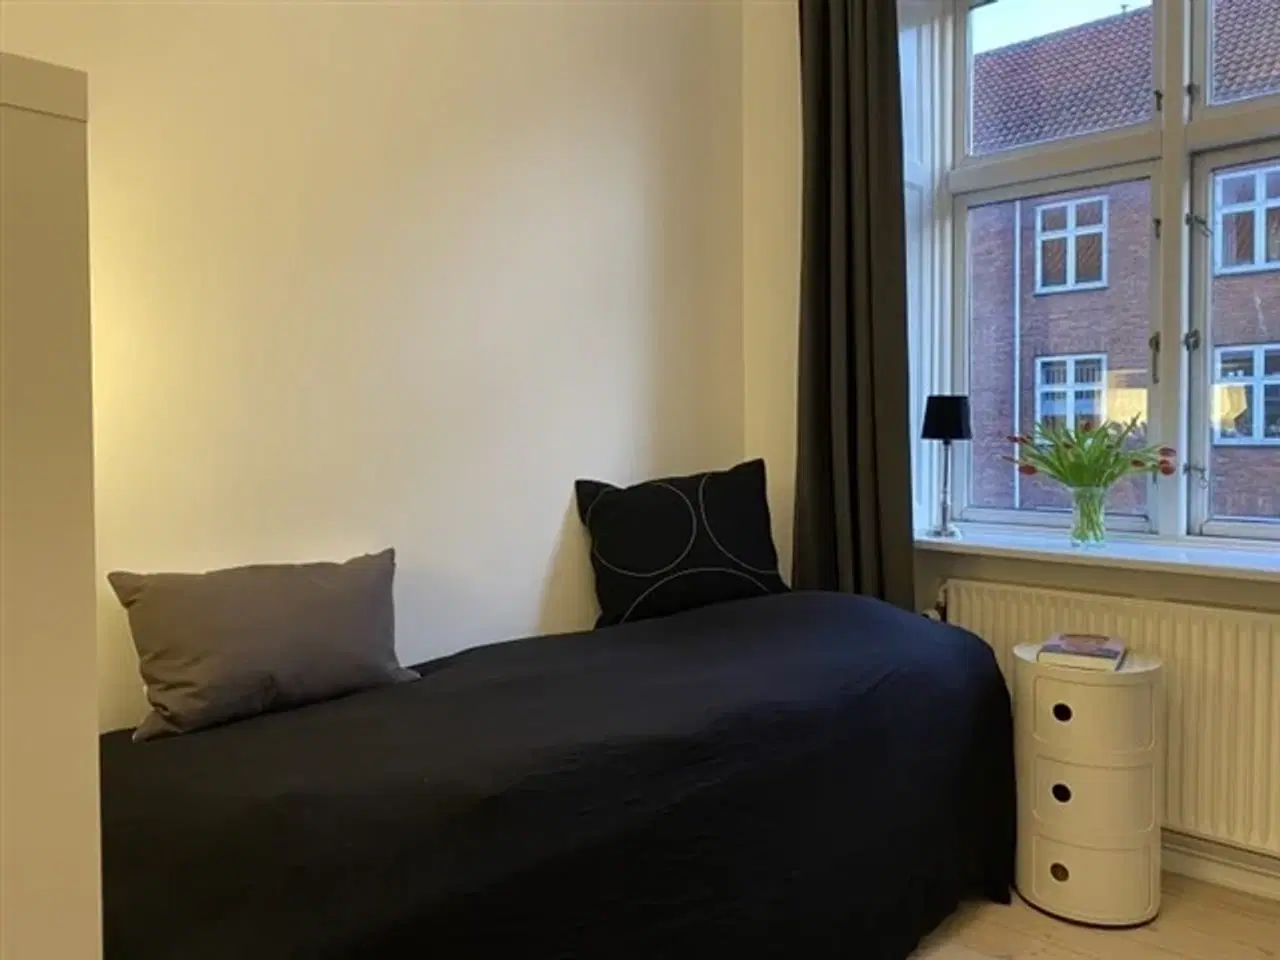 Billede 1 - Standby / Pendler værelse på Amager med hurtig forbindelse til Københavns lufthavn, perfekt til ...